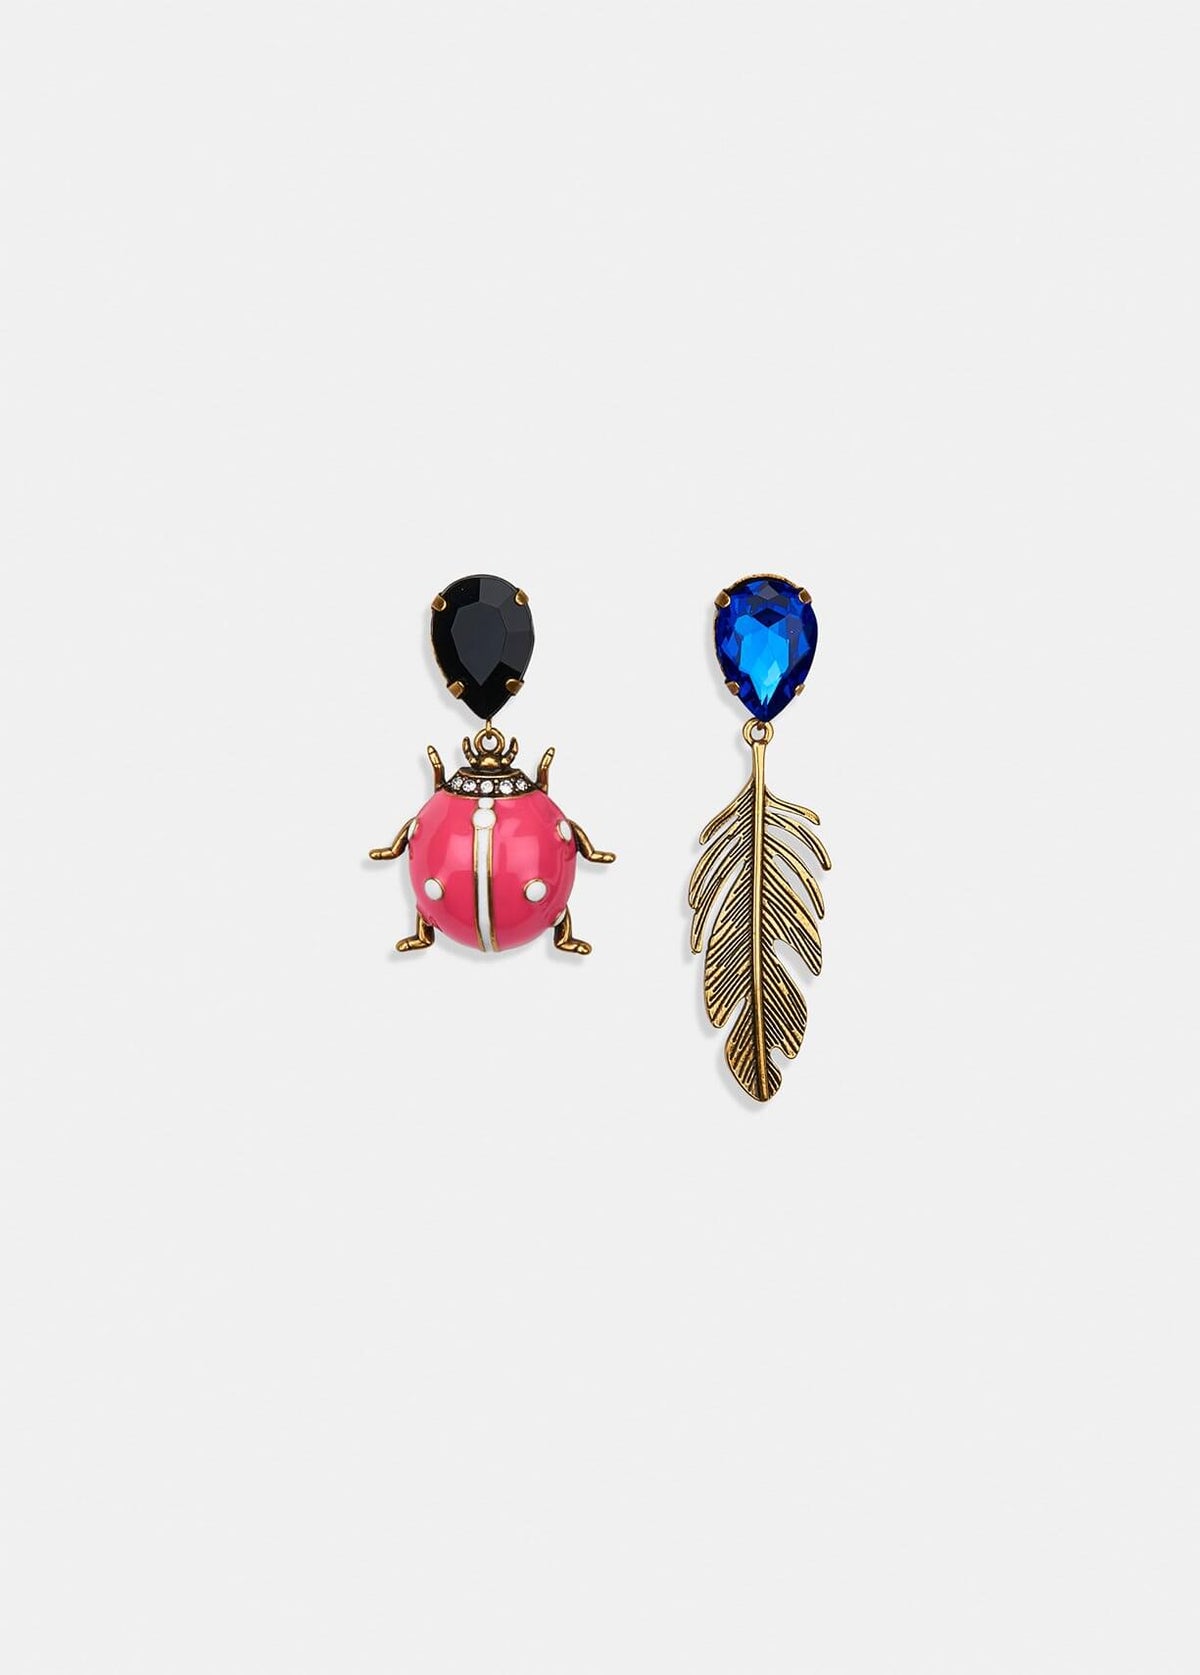 EA Valessi love bug earrings in pink